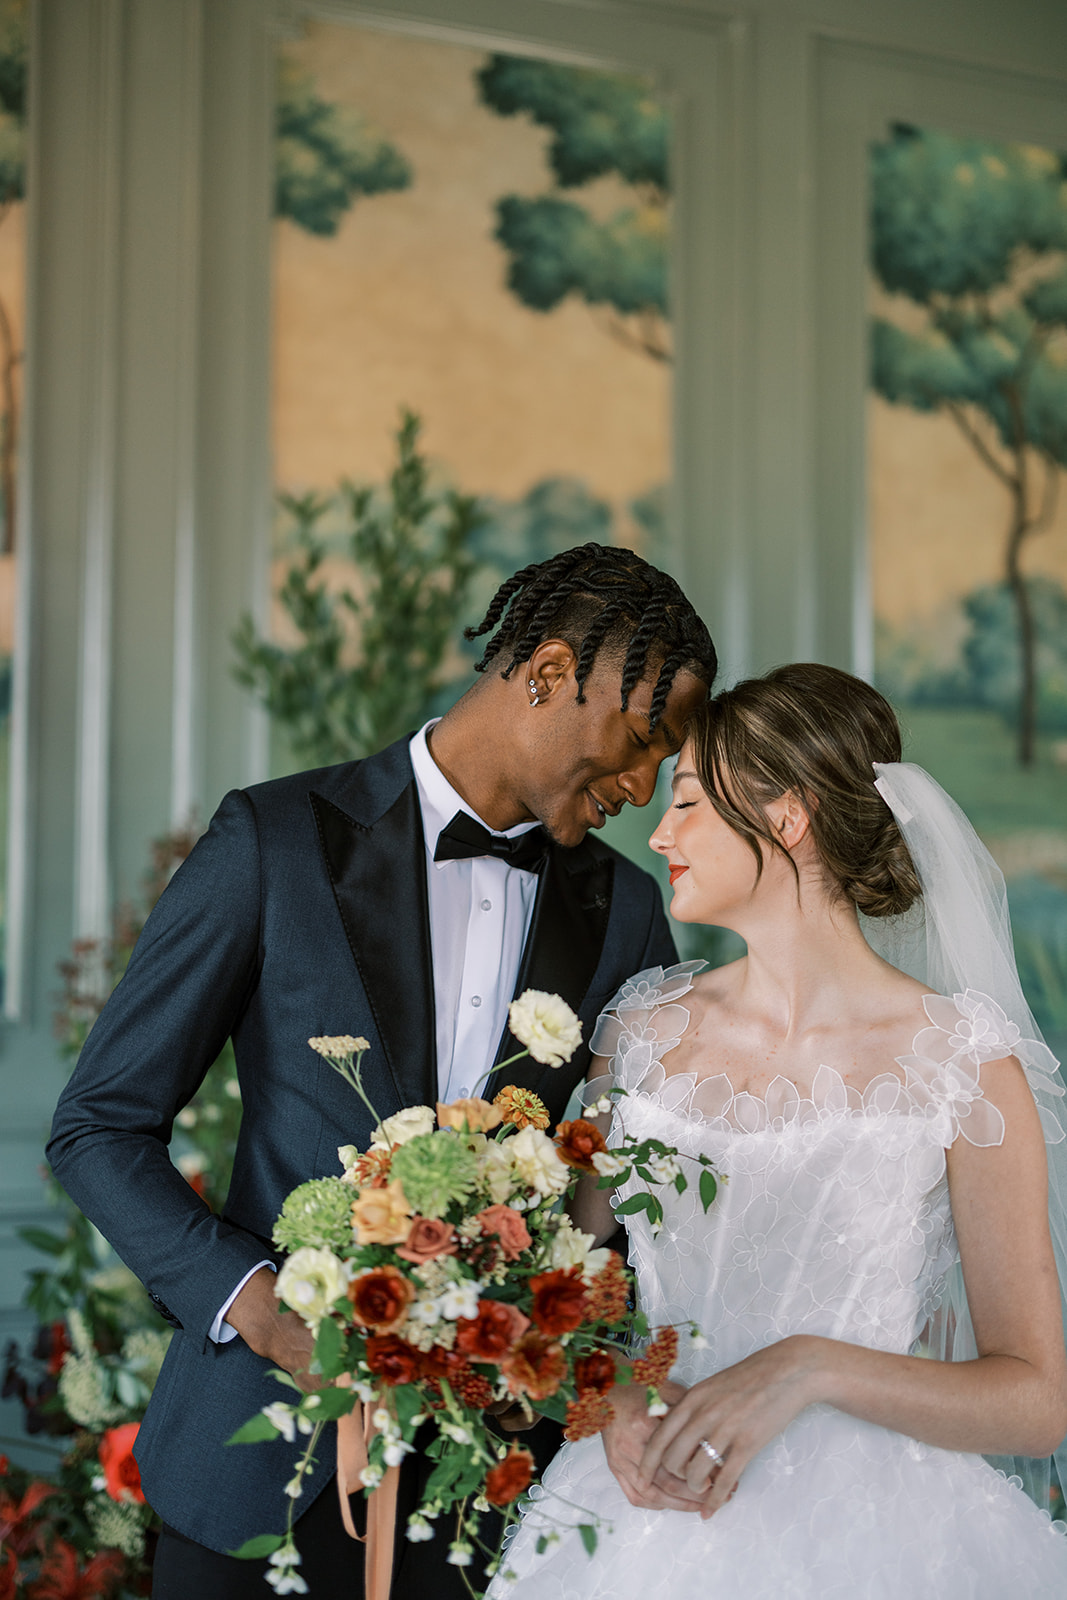 Interracial wedding in dallas